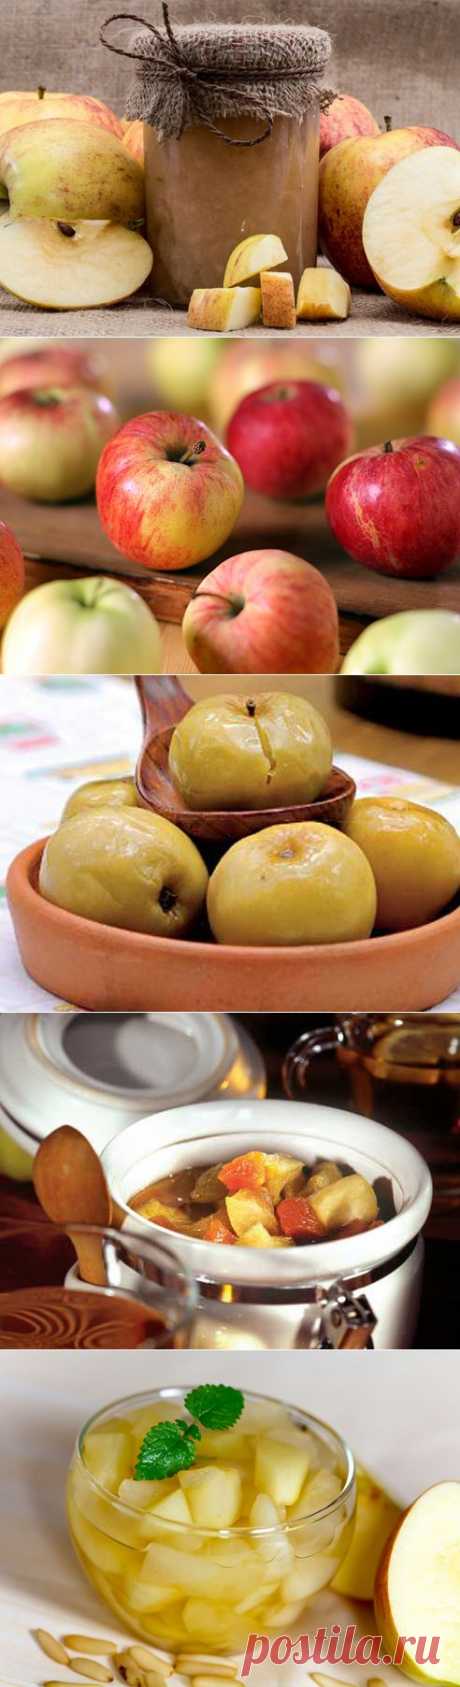 Яблоки моченые, яблочное варенье, яблочный компот, яблочный сок: рецепты на Supersadovnik.ru